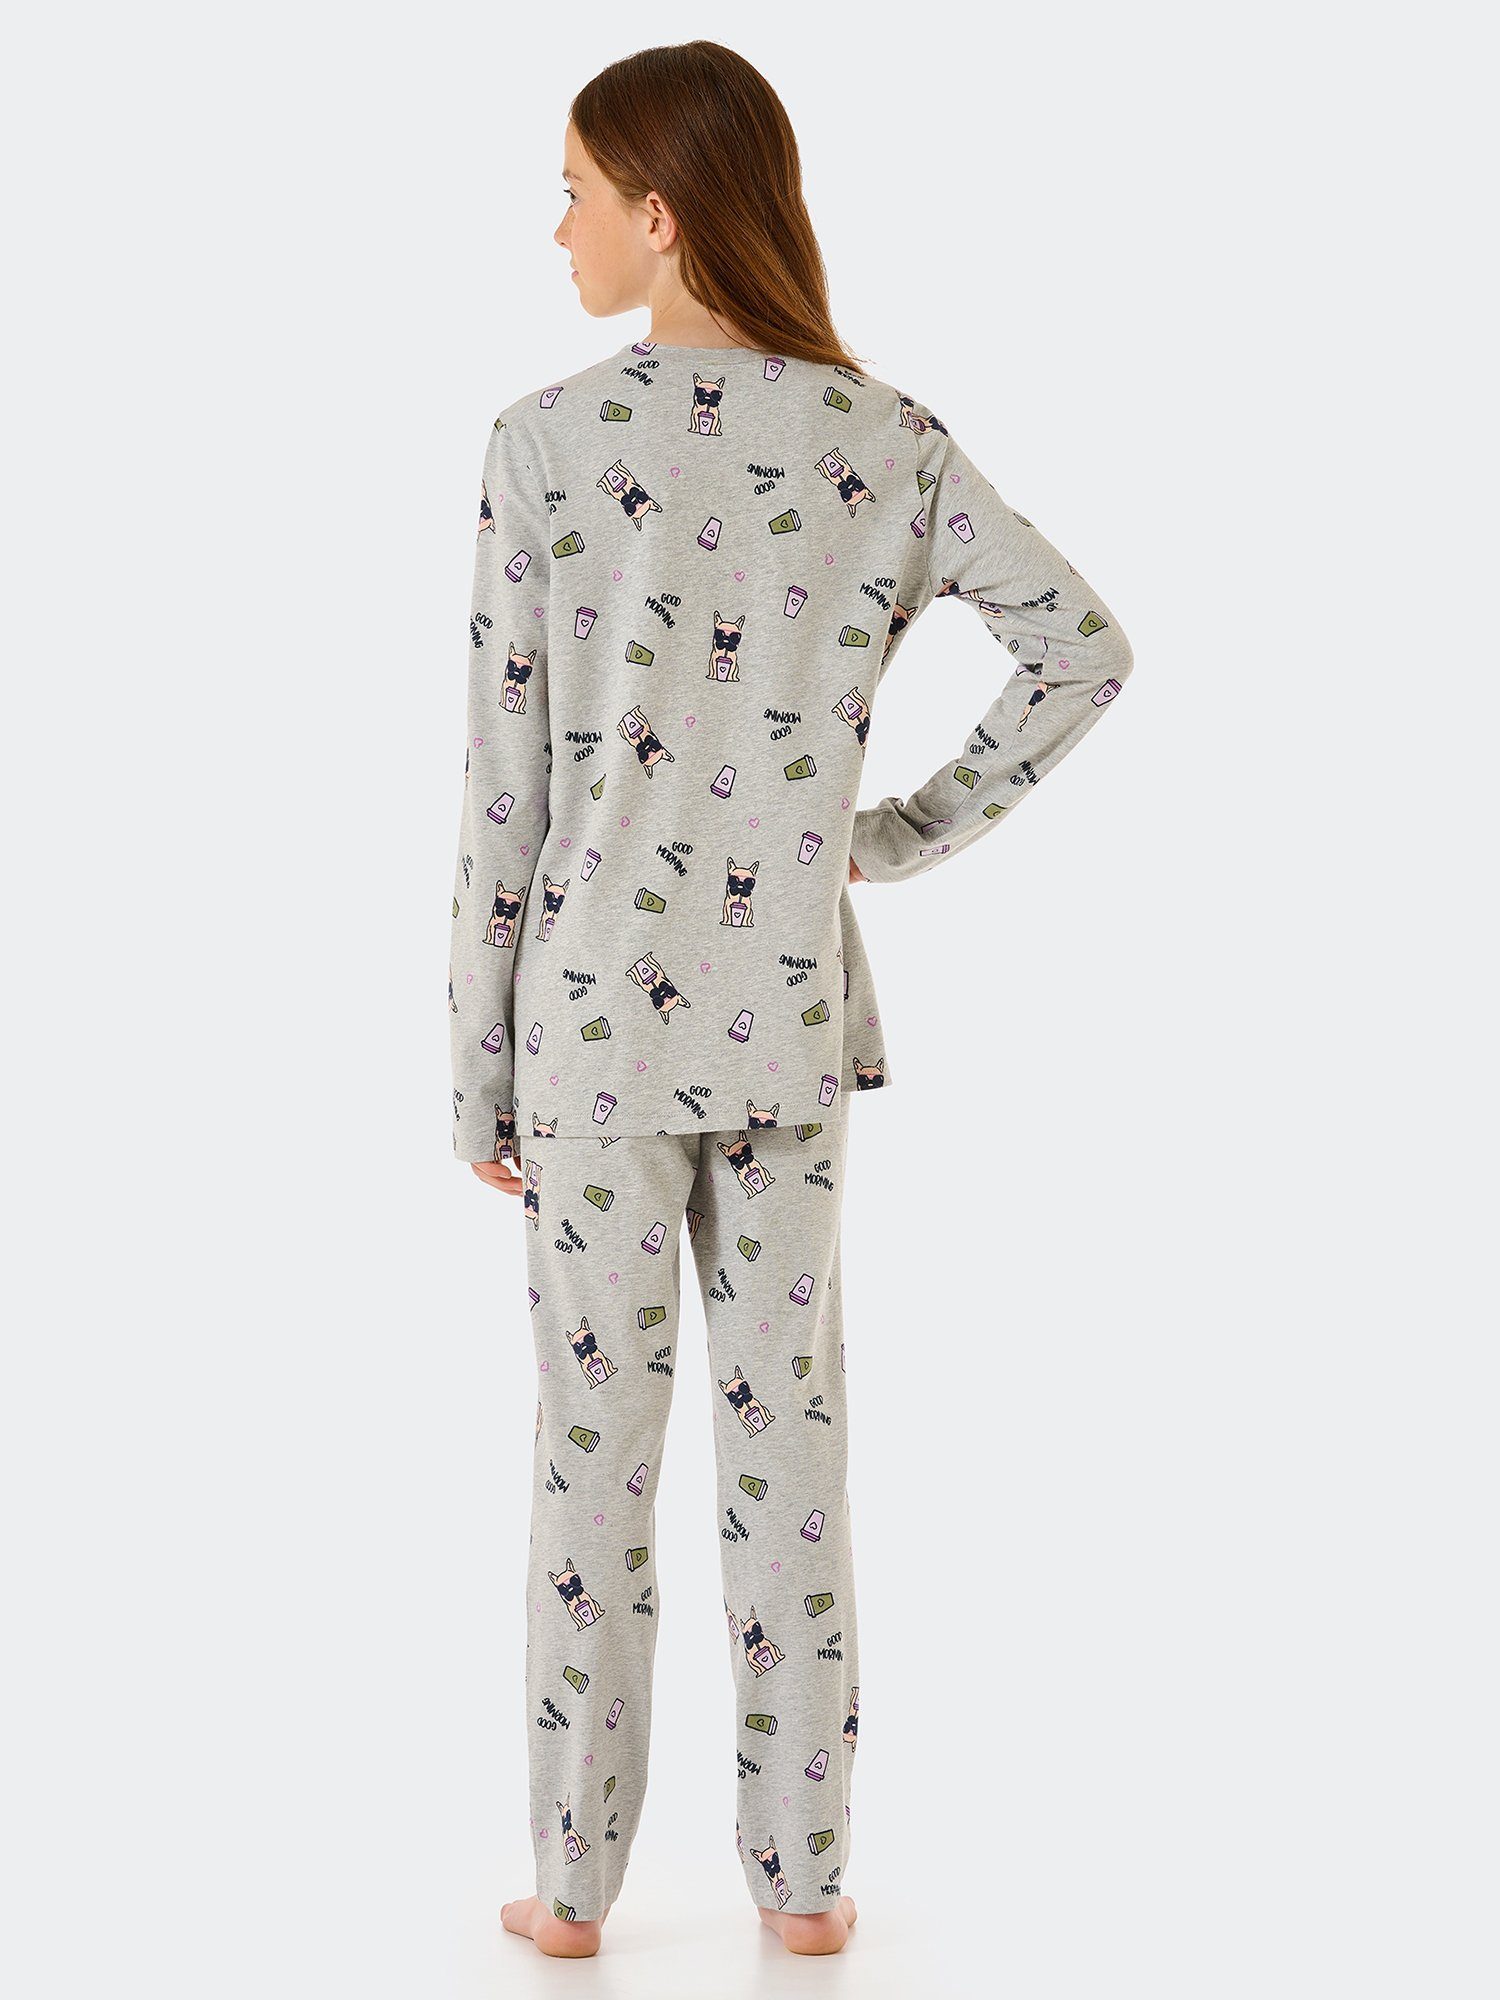 Original grau-mel. Pyjama Schiesser Classics